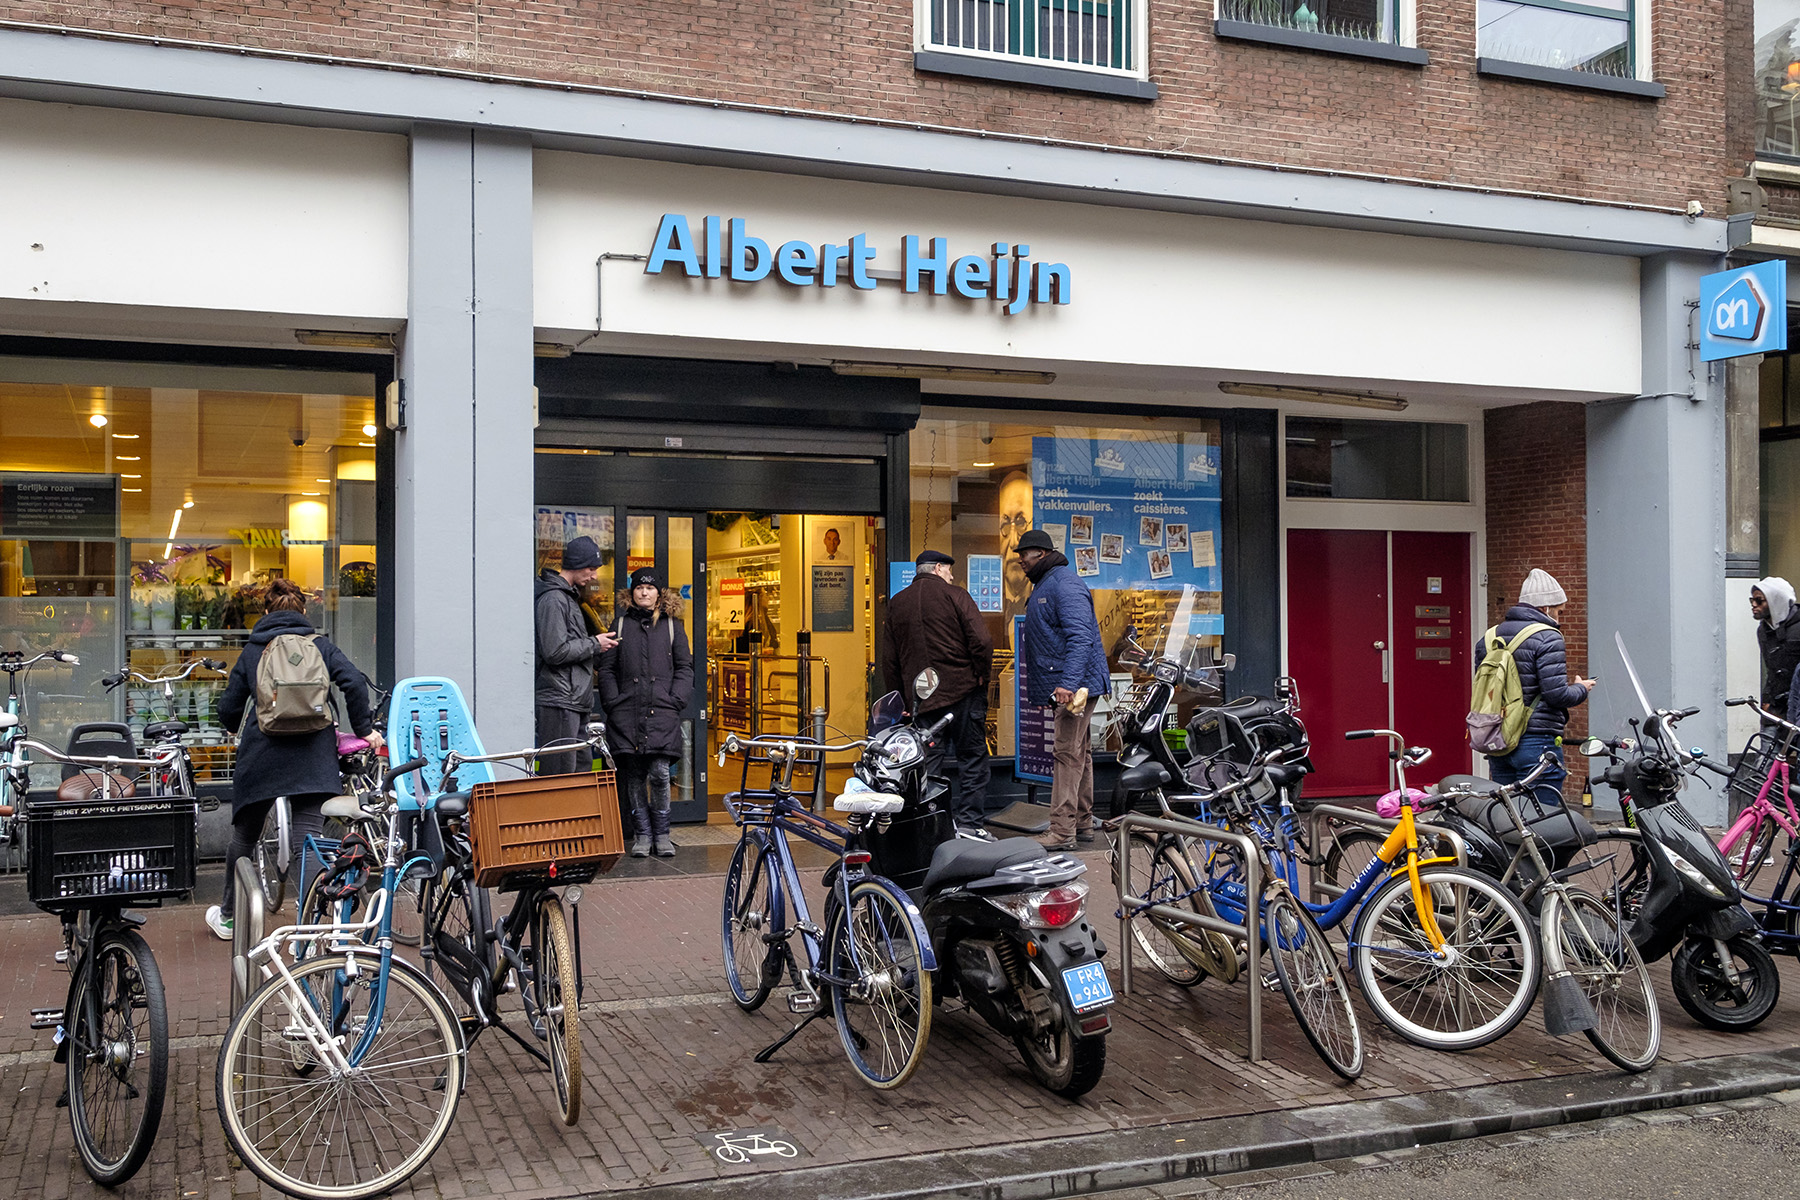 An Albert Heijn supermarket in Amsterdam